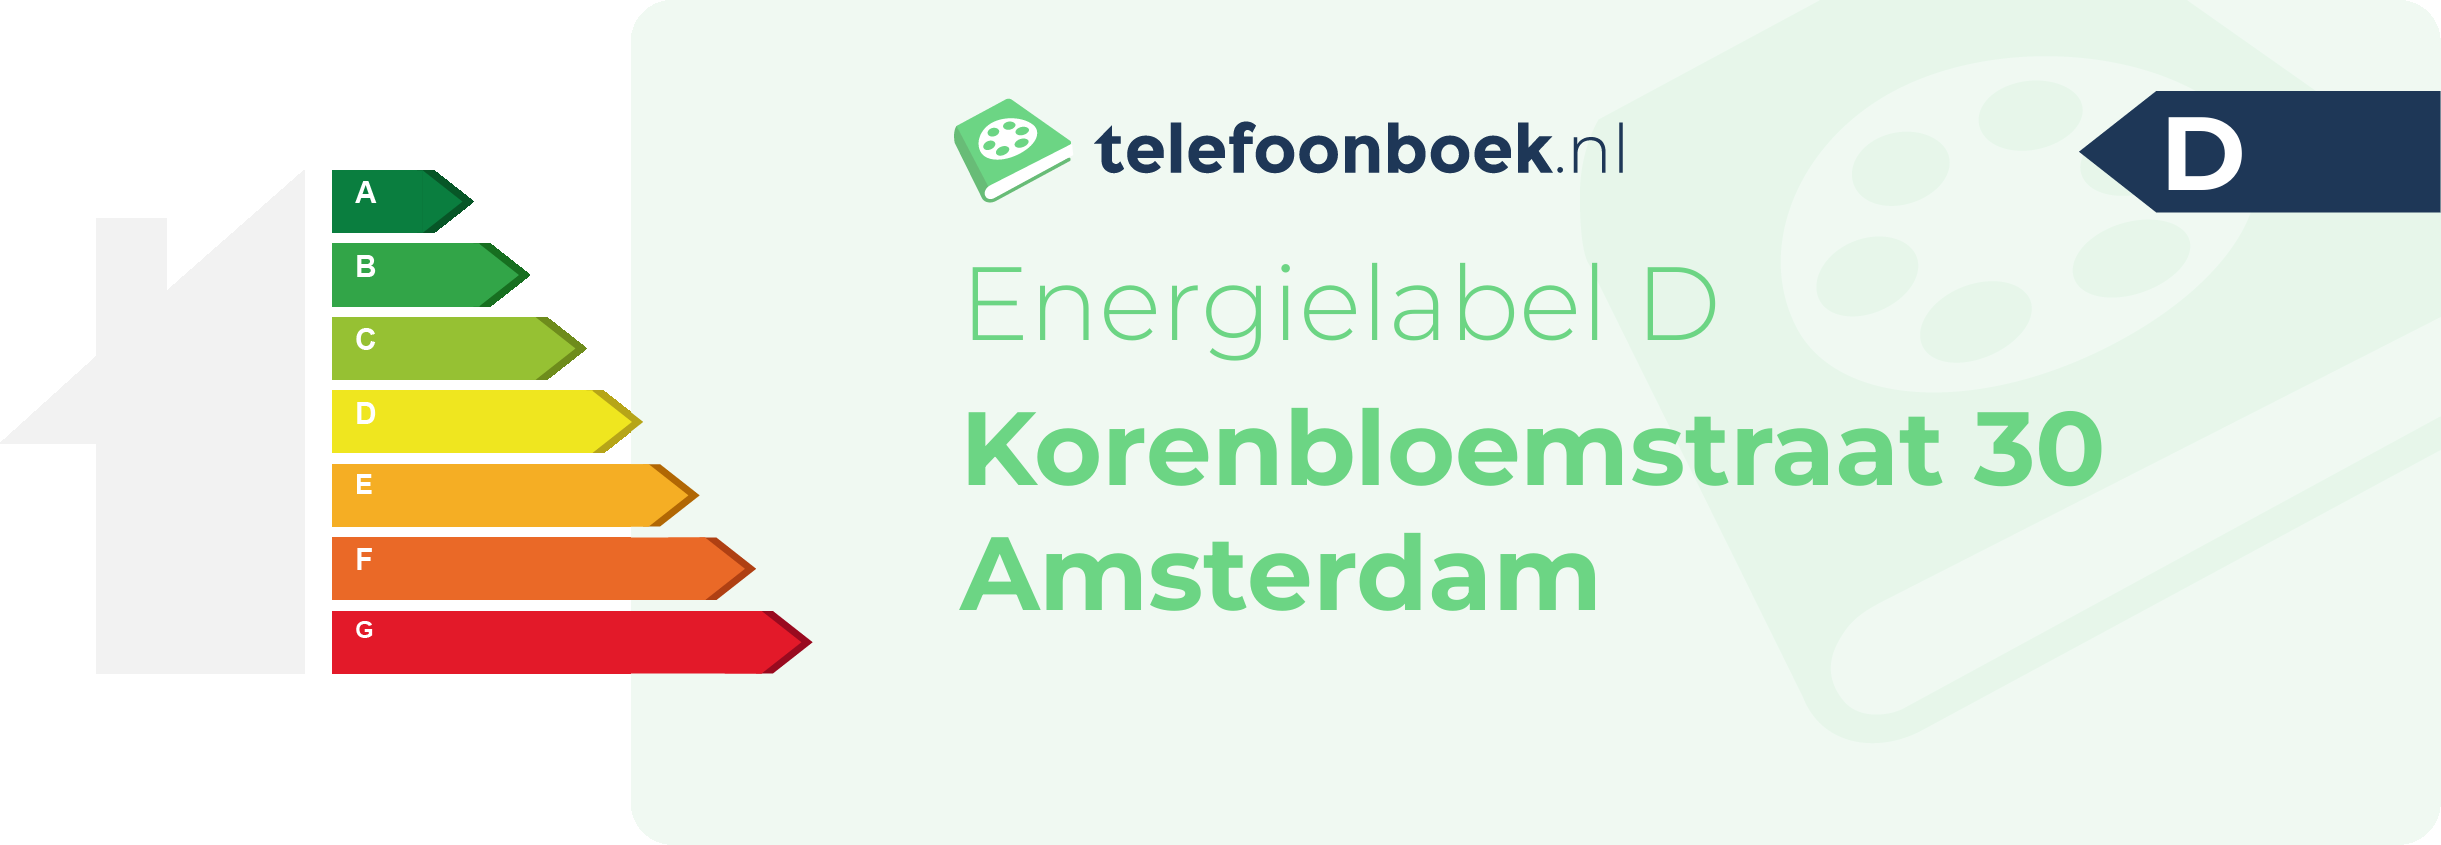 Energielabel Korenbloemstraat 30 Amsterdam